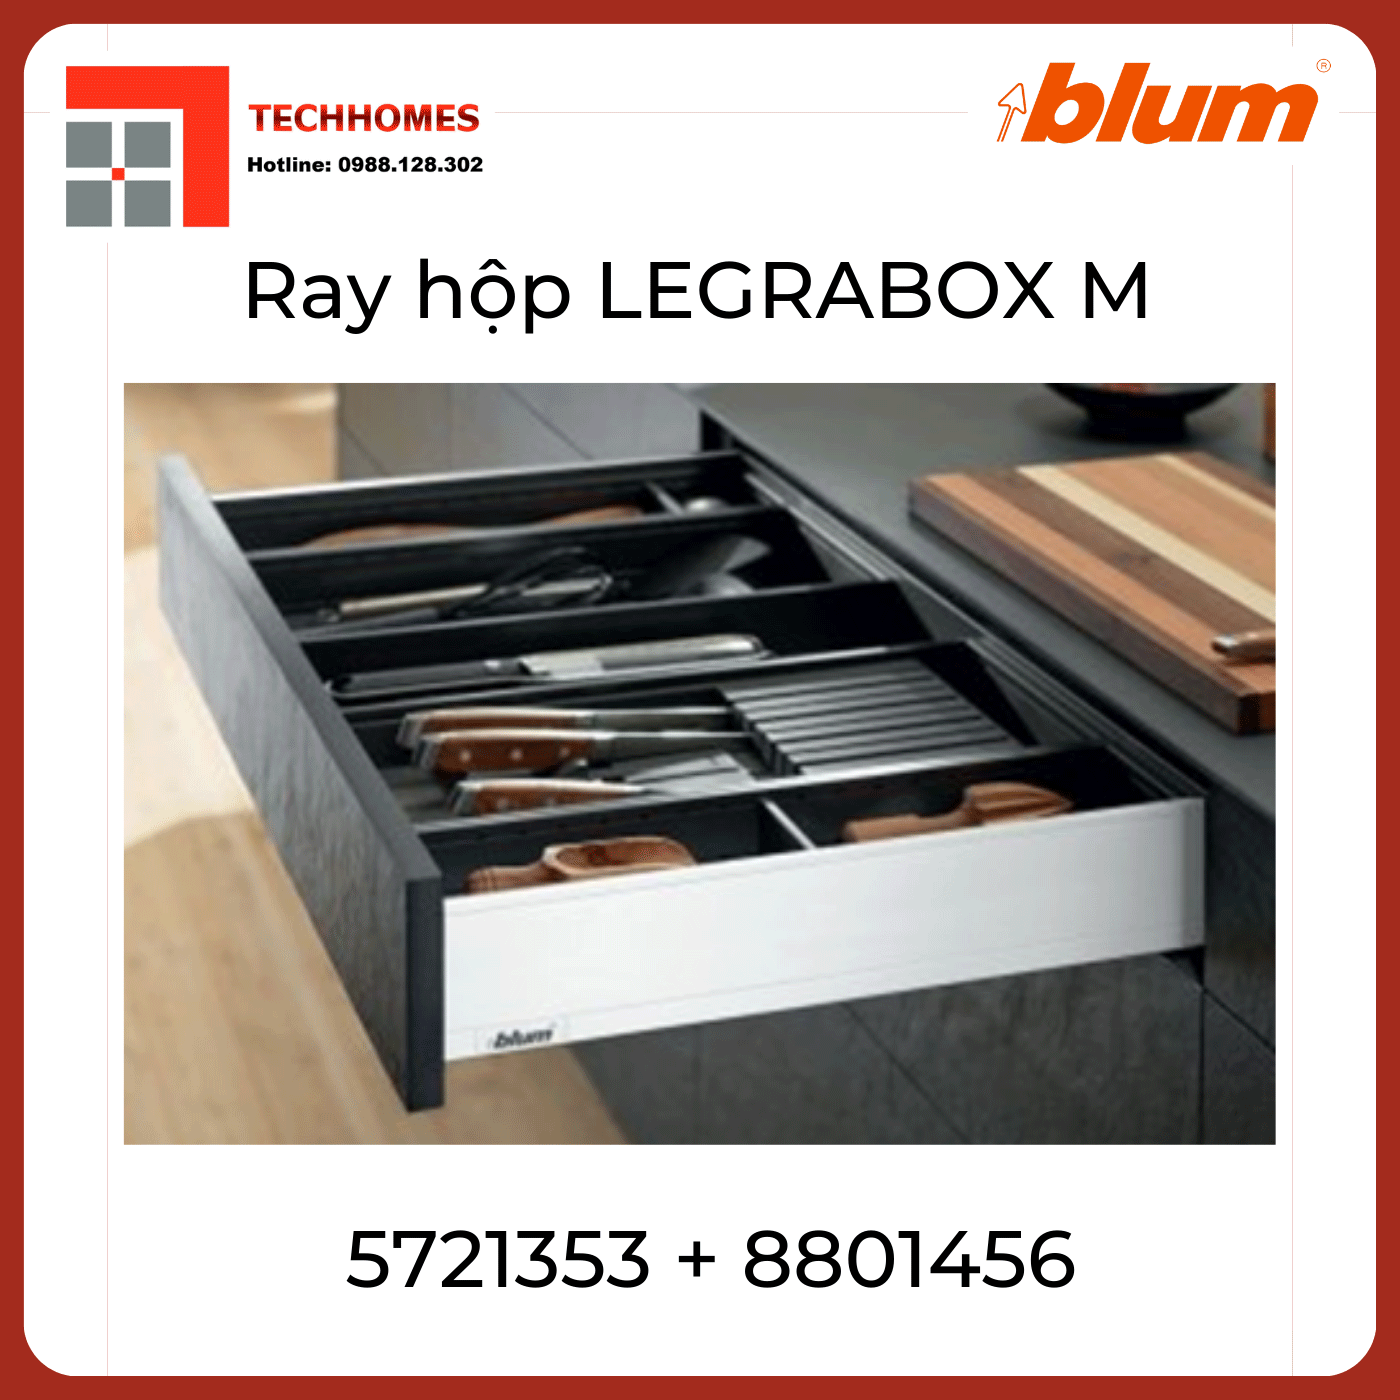 Trọn bộ ray hộp LEGRABOX M - Blum 40kg trắng